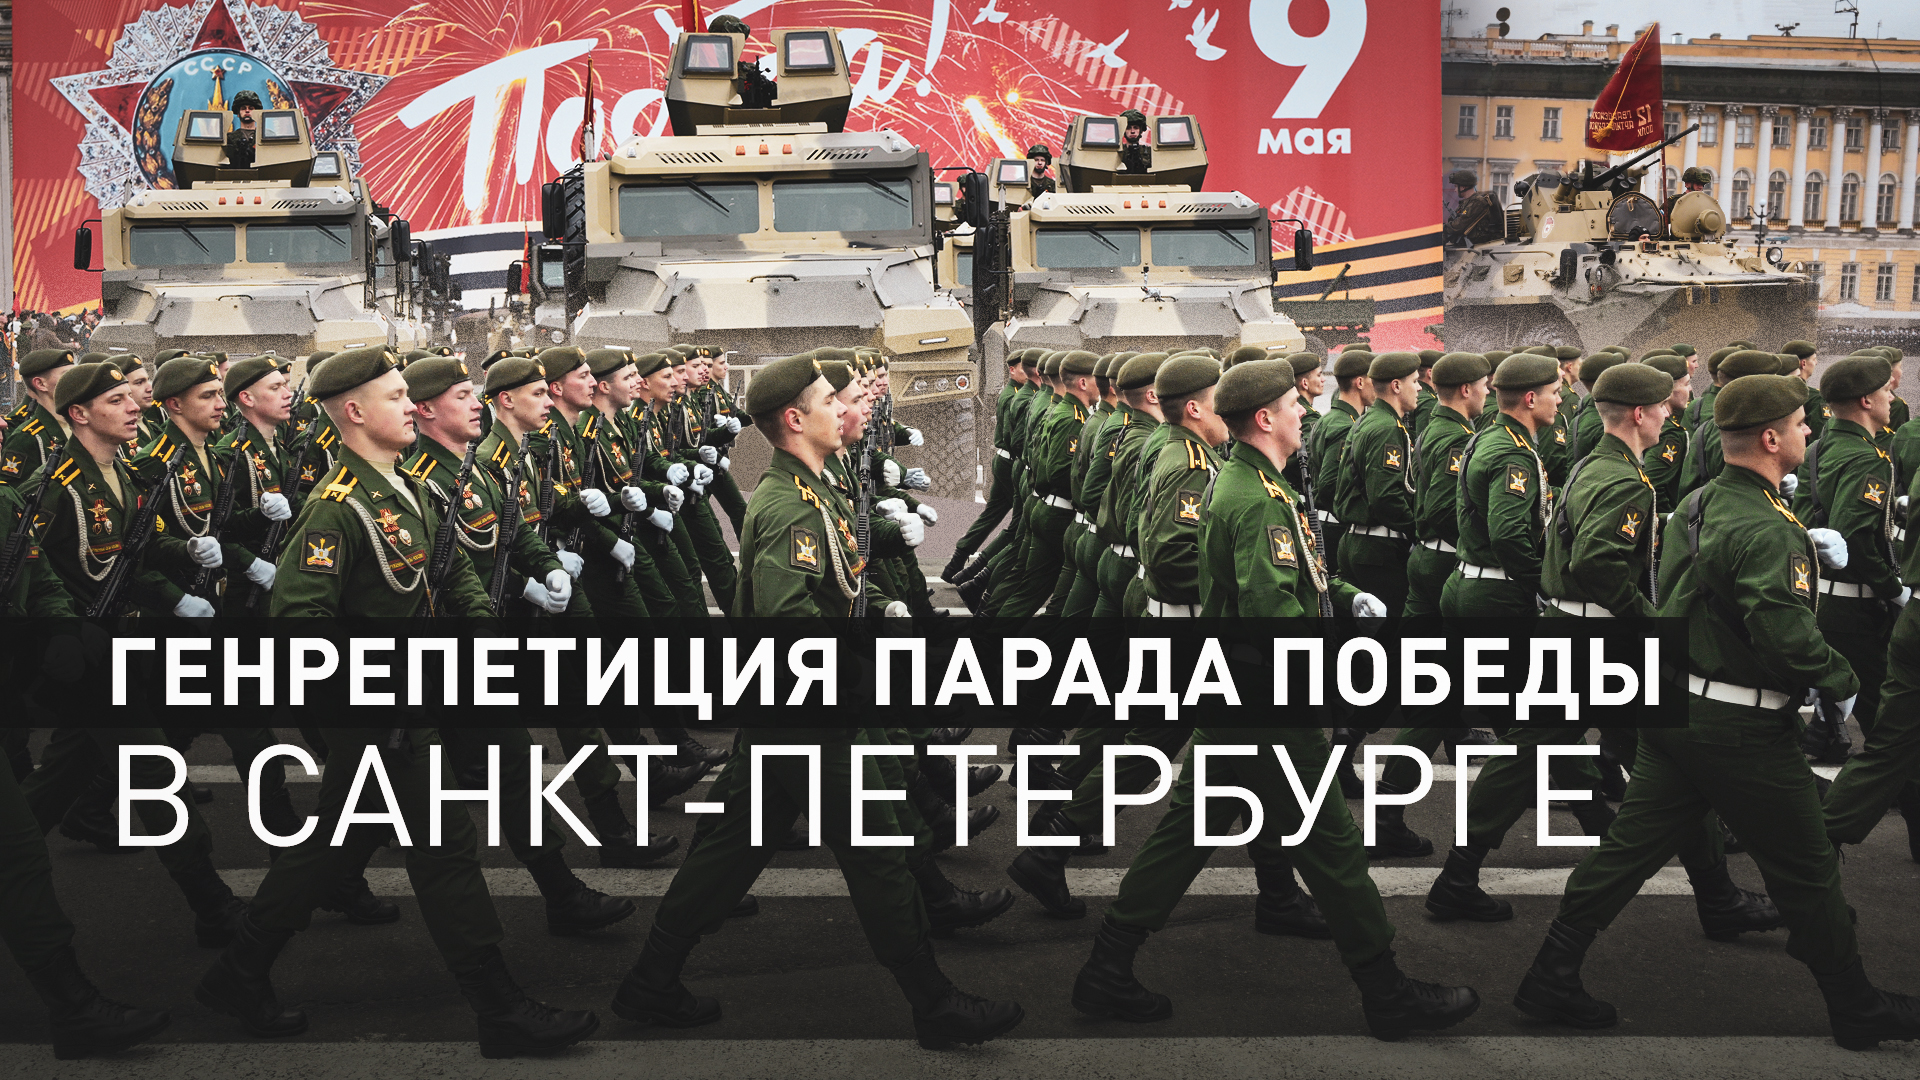 Колонна боевой техники и марш военных: генрепетиция парада Победы прошла в Санкт-Петербурге